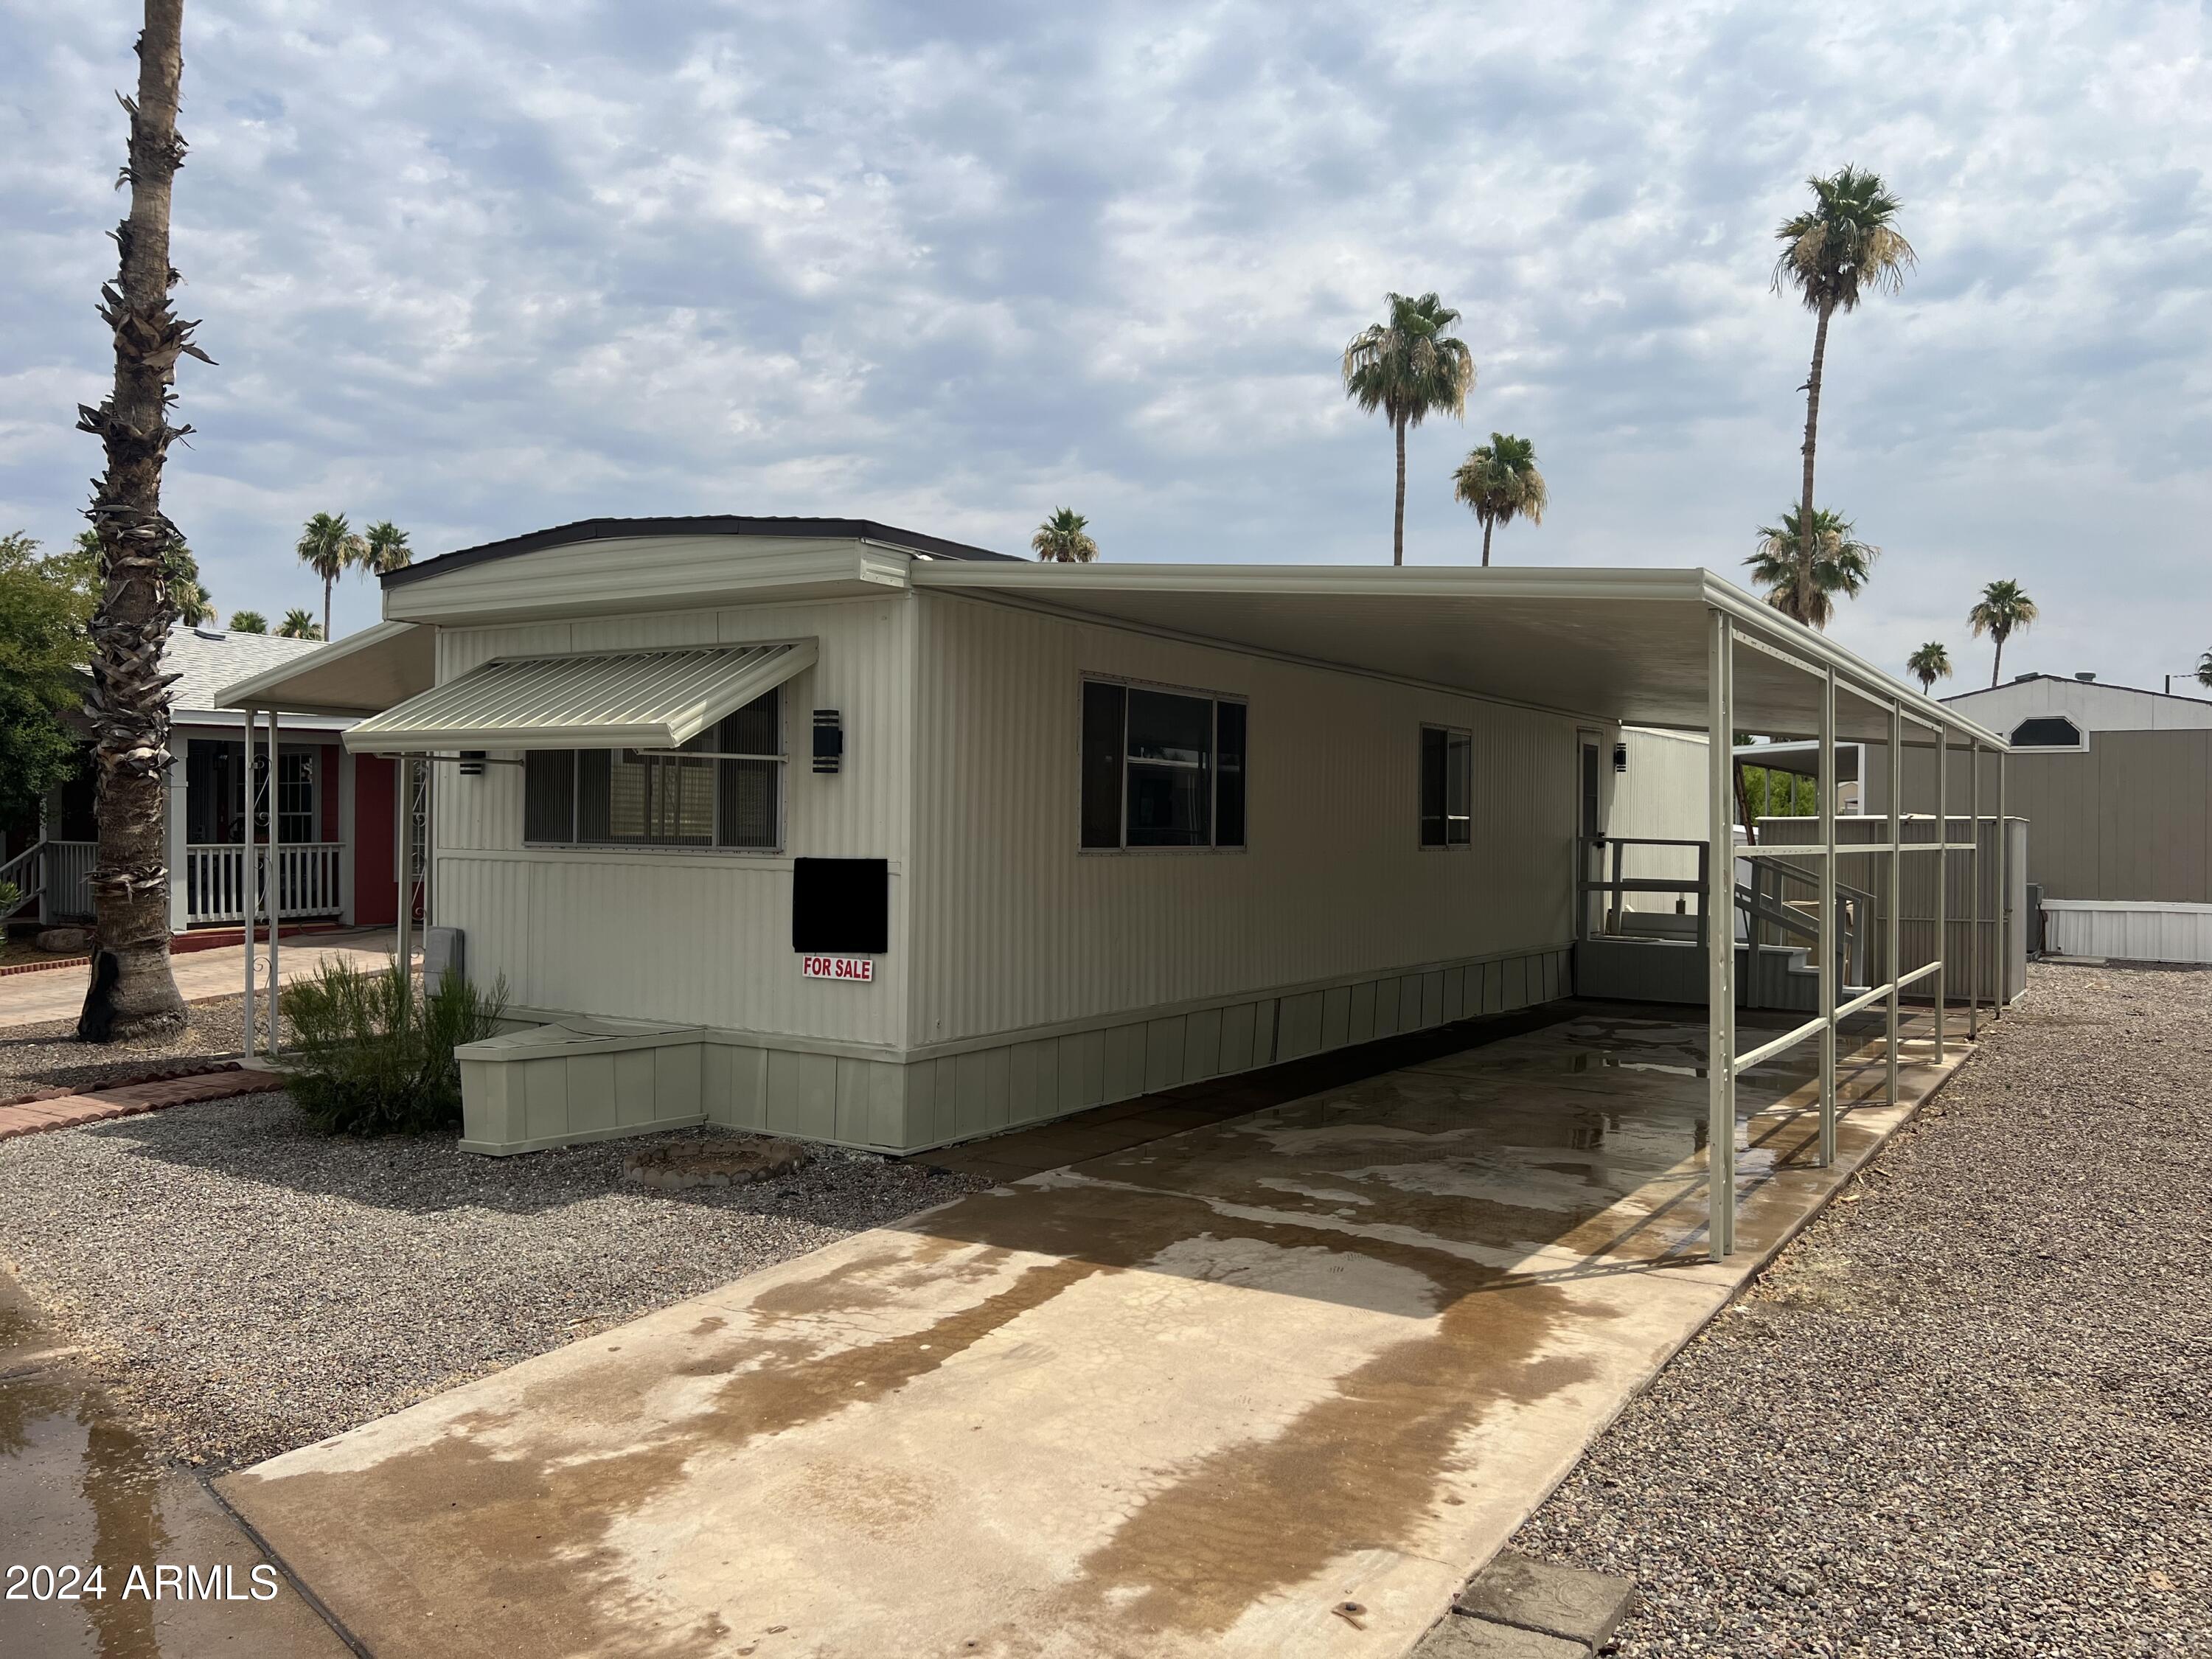 View Glendale, AZ 85301 mobile home